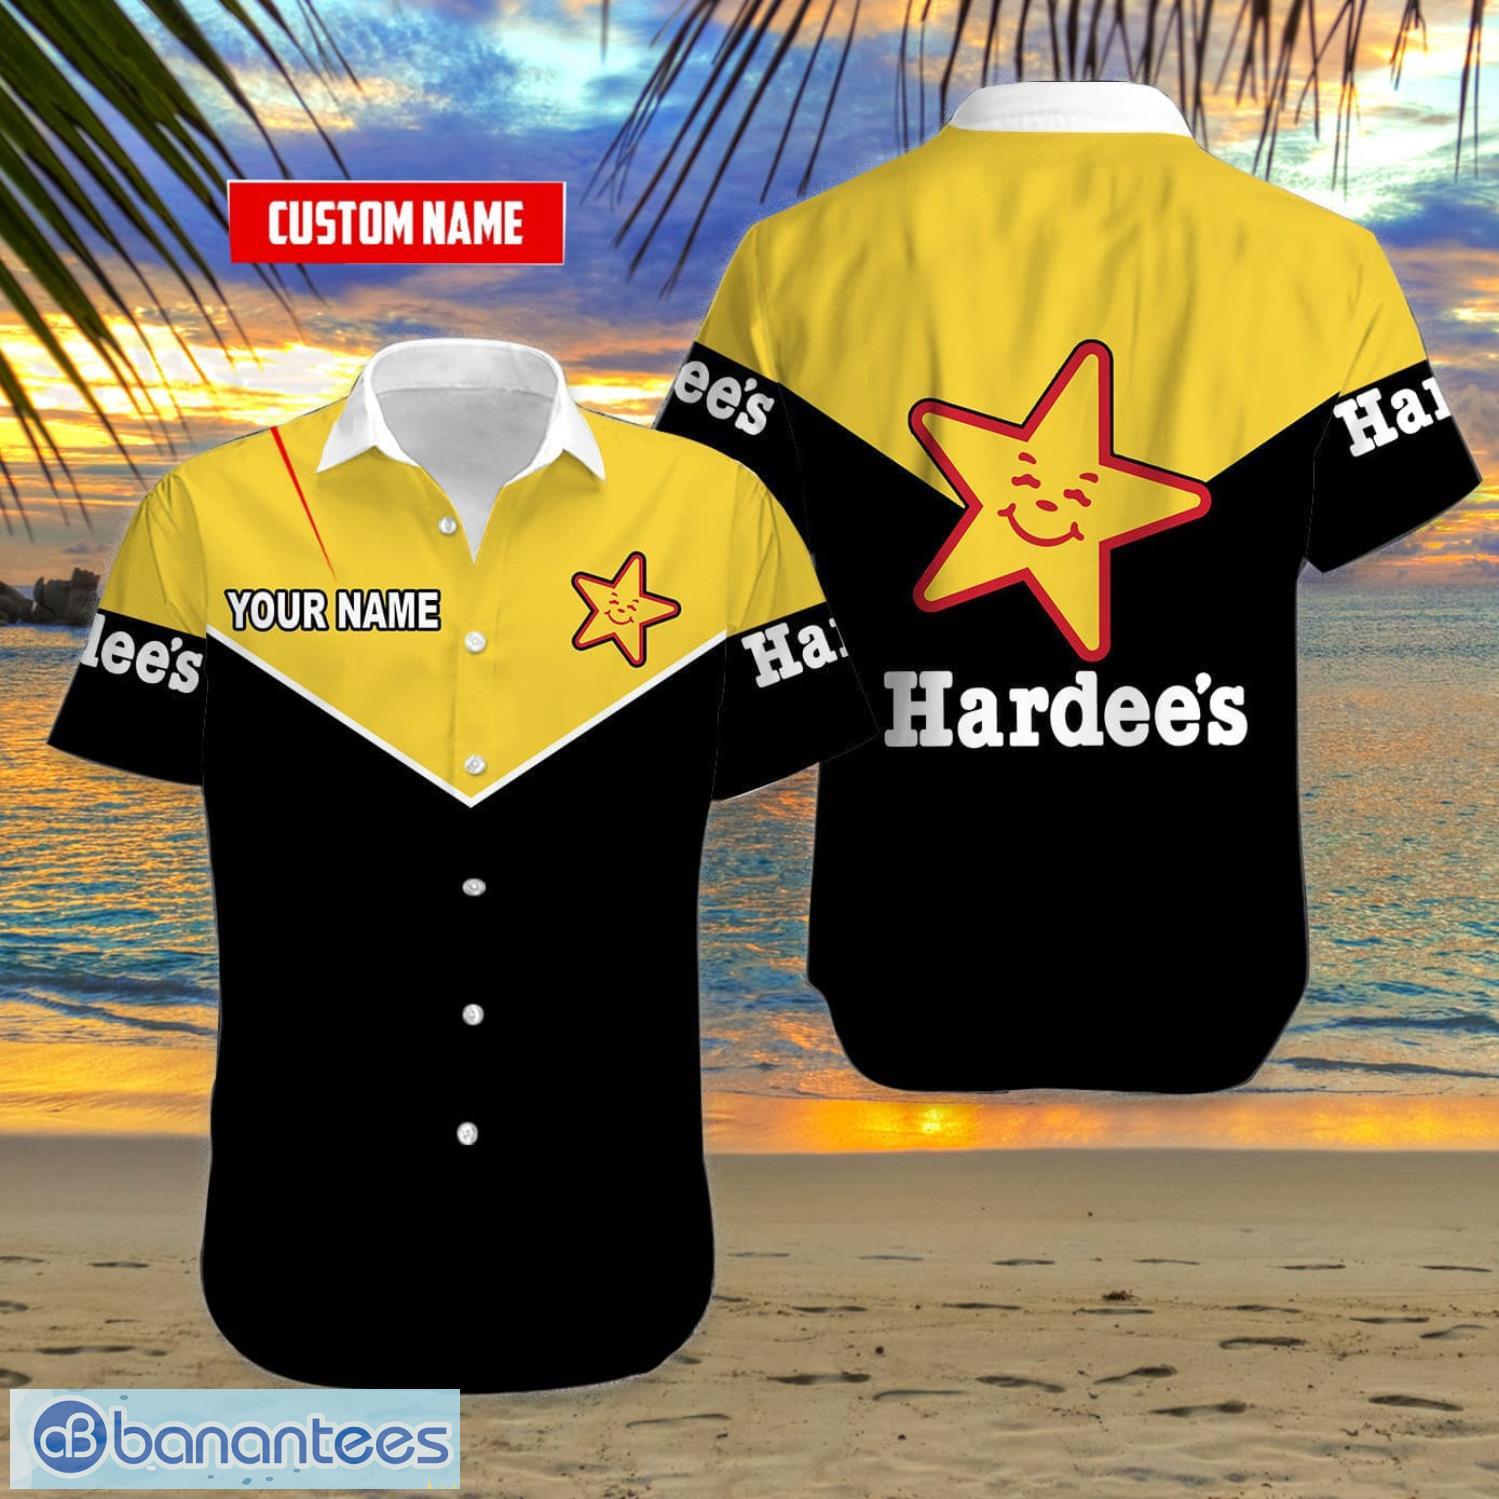 Custom Name Hawaii Short Sleeve Shirt Hardee's Summer Gift Black Yellow  Hawaiian Shirt - Banantees